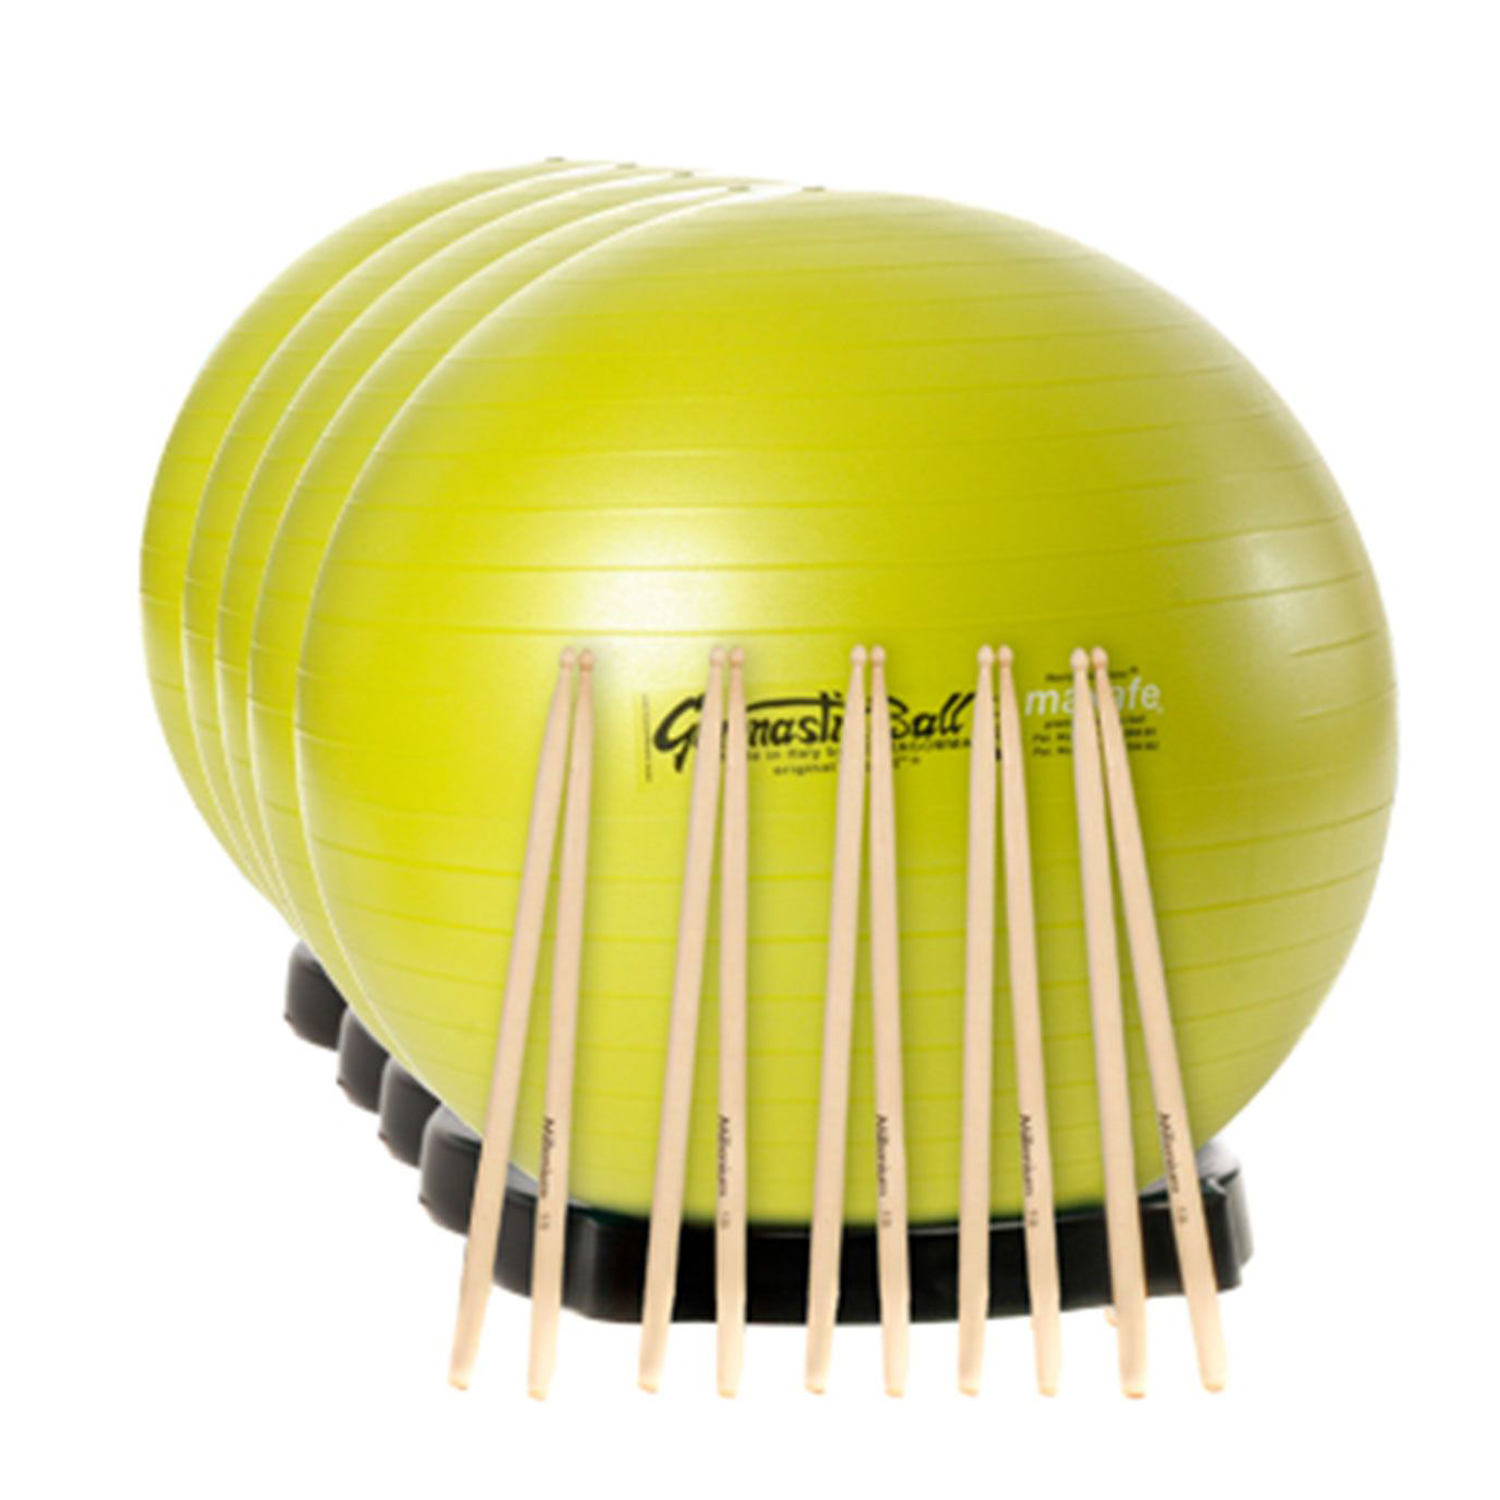 Drums Mid Kombi: 5x Ball MAXAFE 75 cm, Ballschale und Sticks